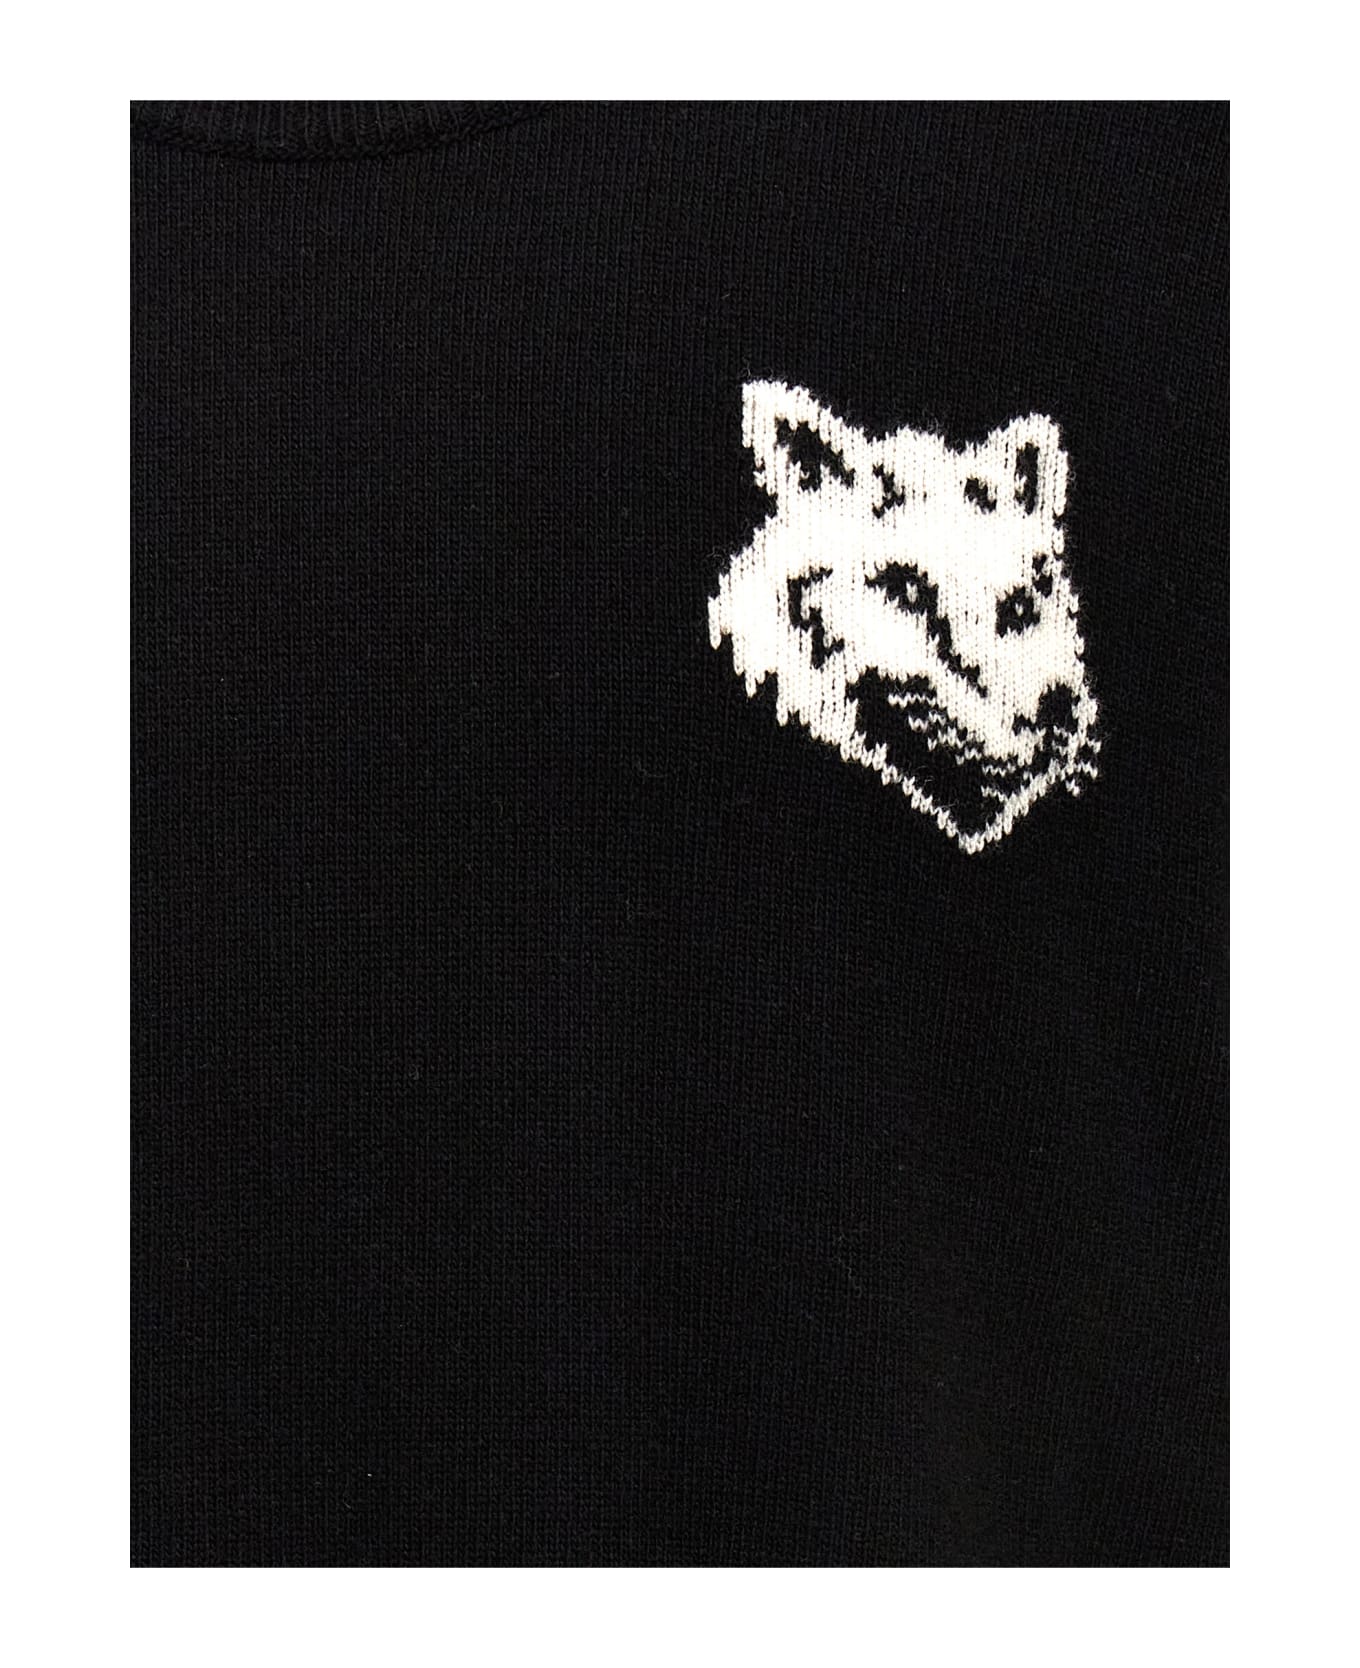 Maison Kitsuné 'fox Head' Sweater - Black   ニットウェア